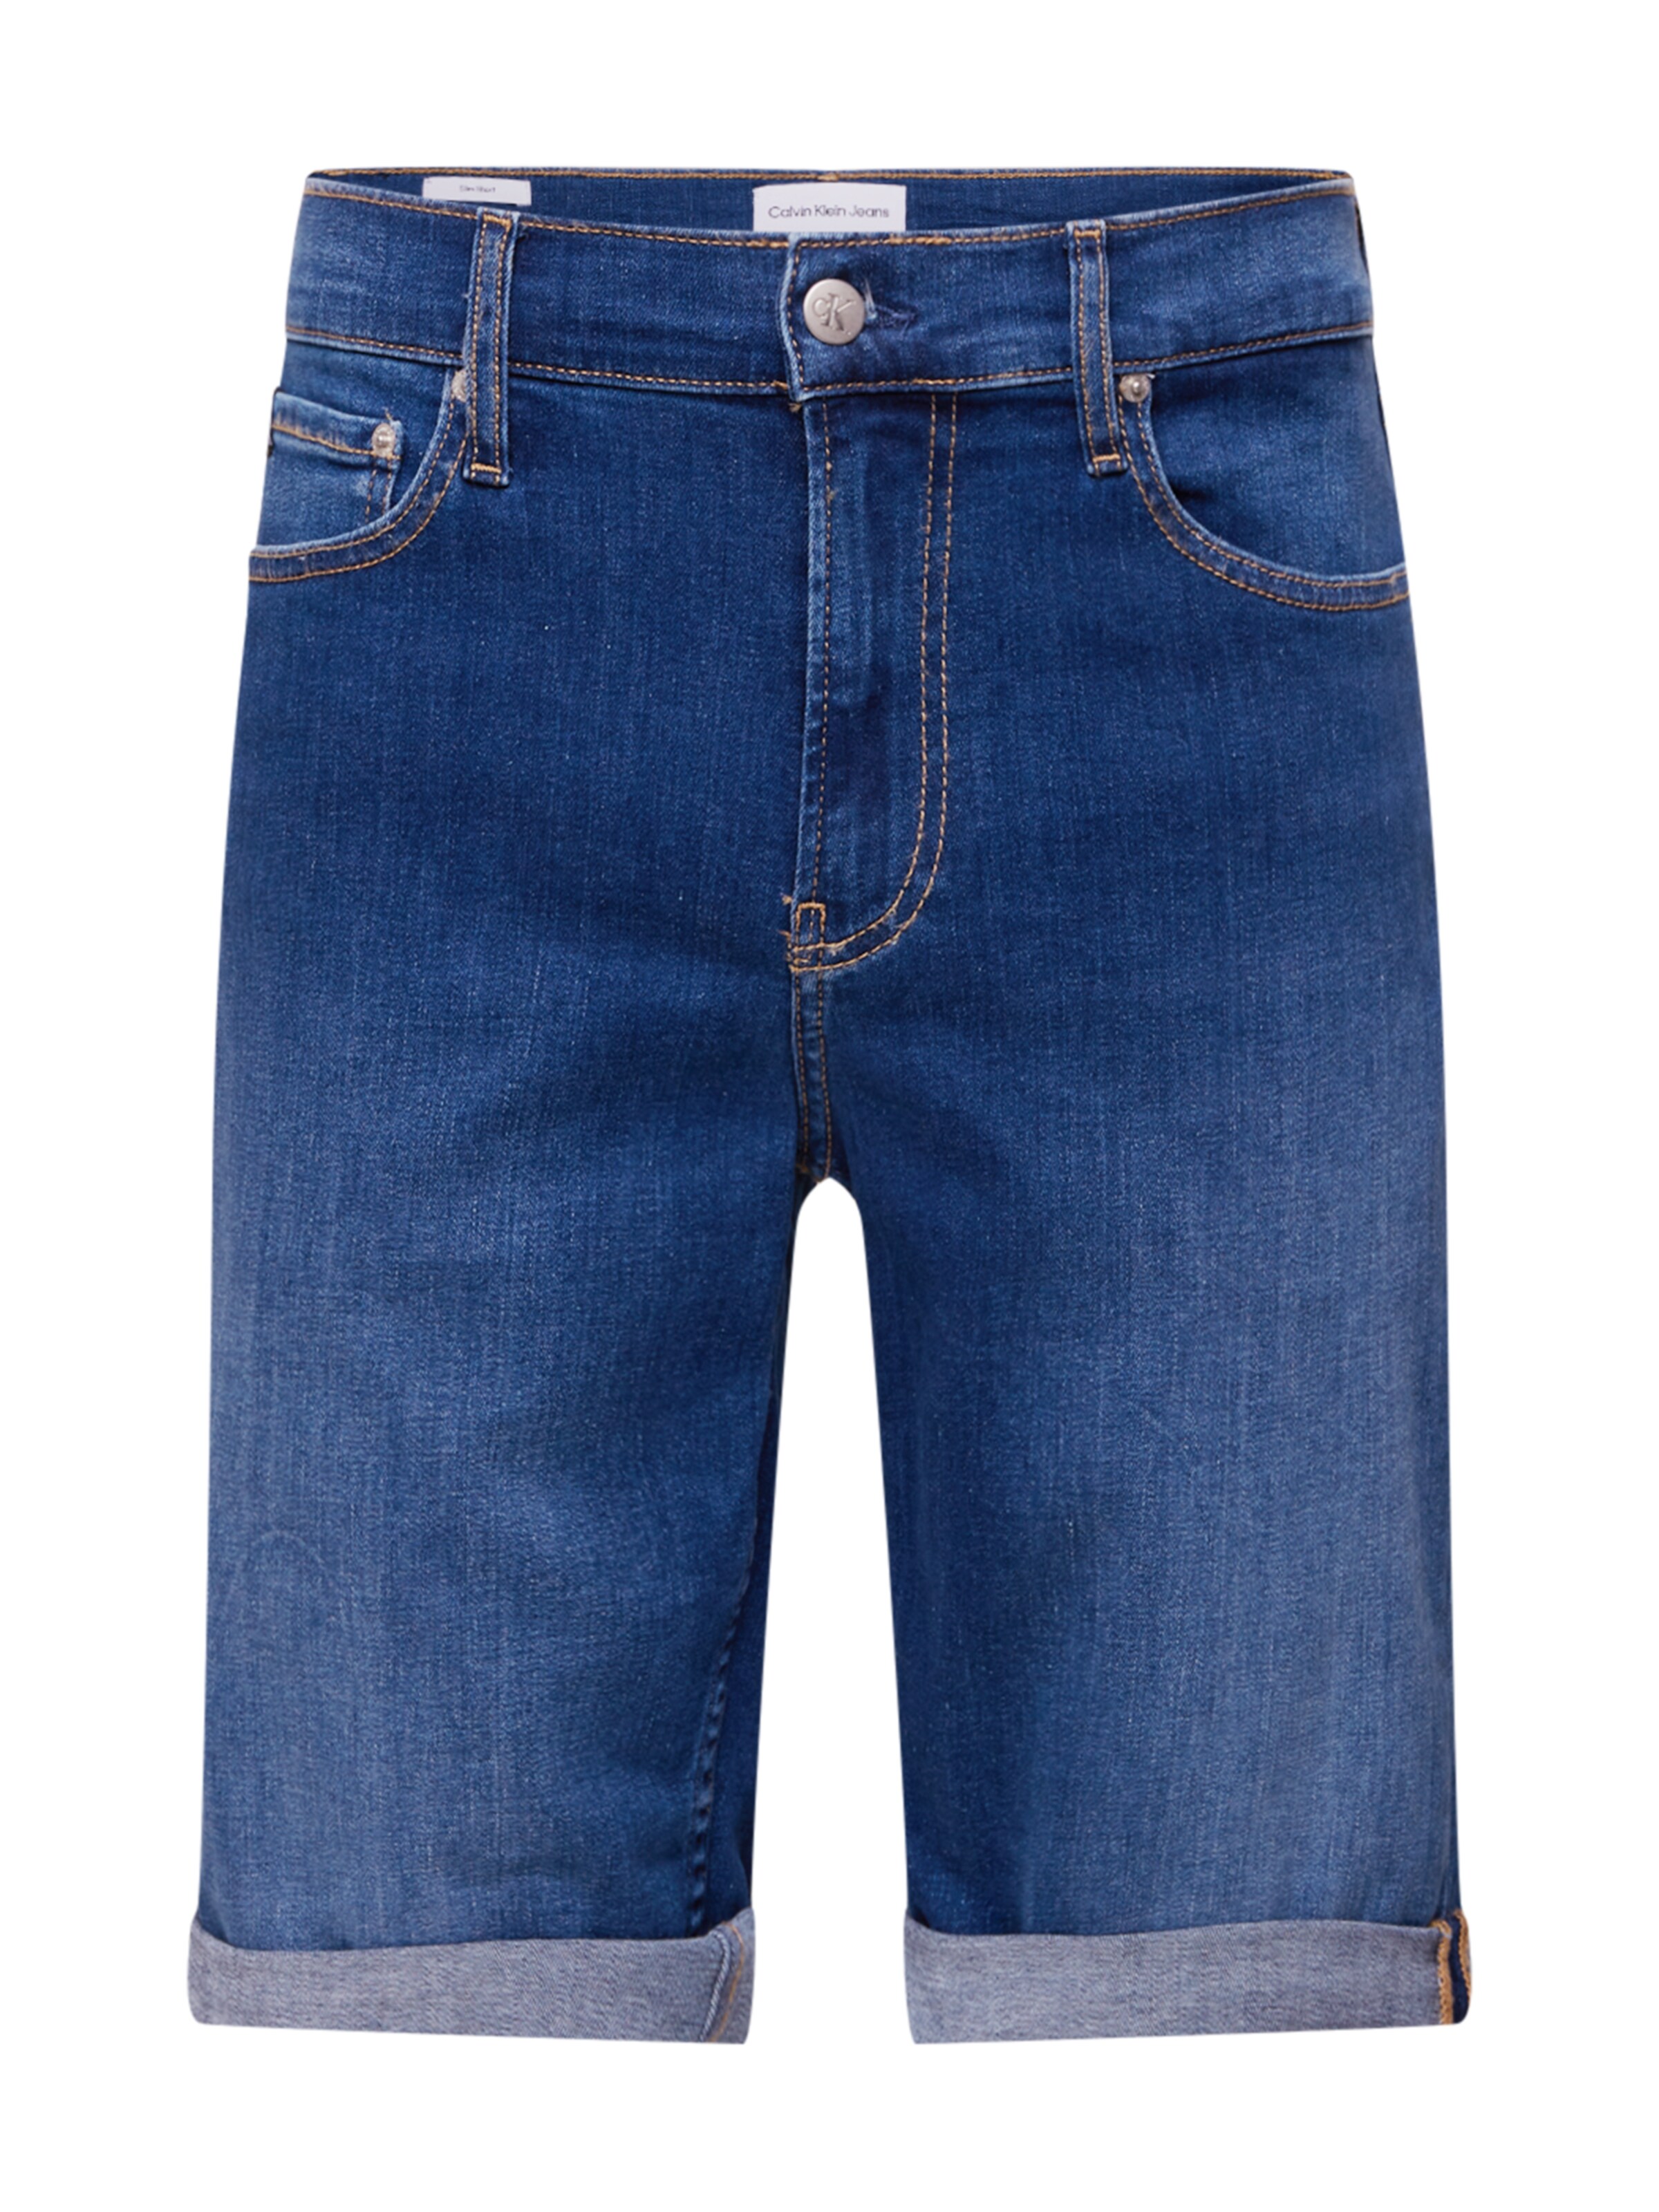 Abbigliamento Uomo Calvin Klein Jeans Jeans in Blu 